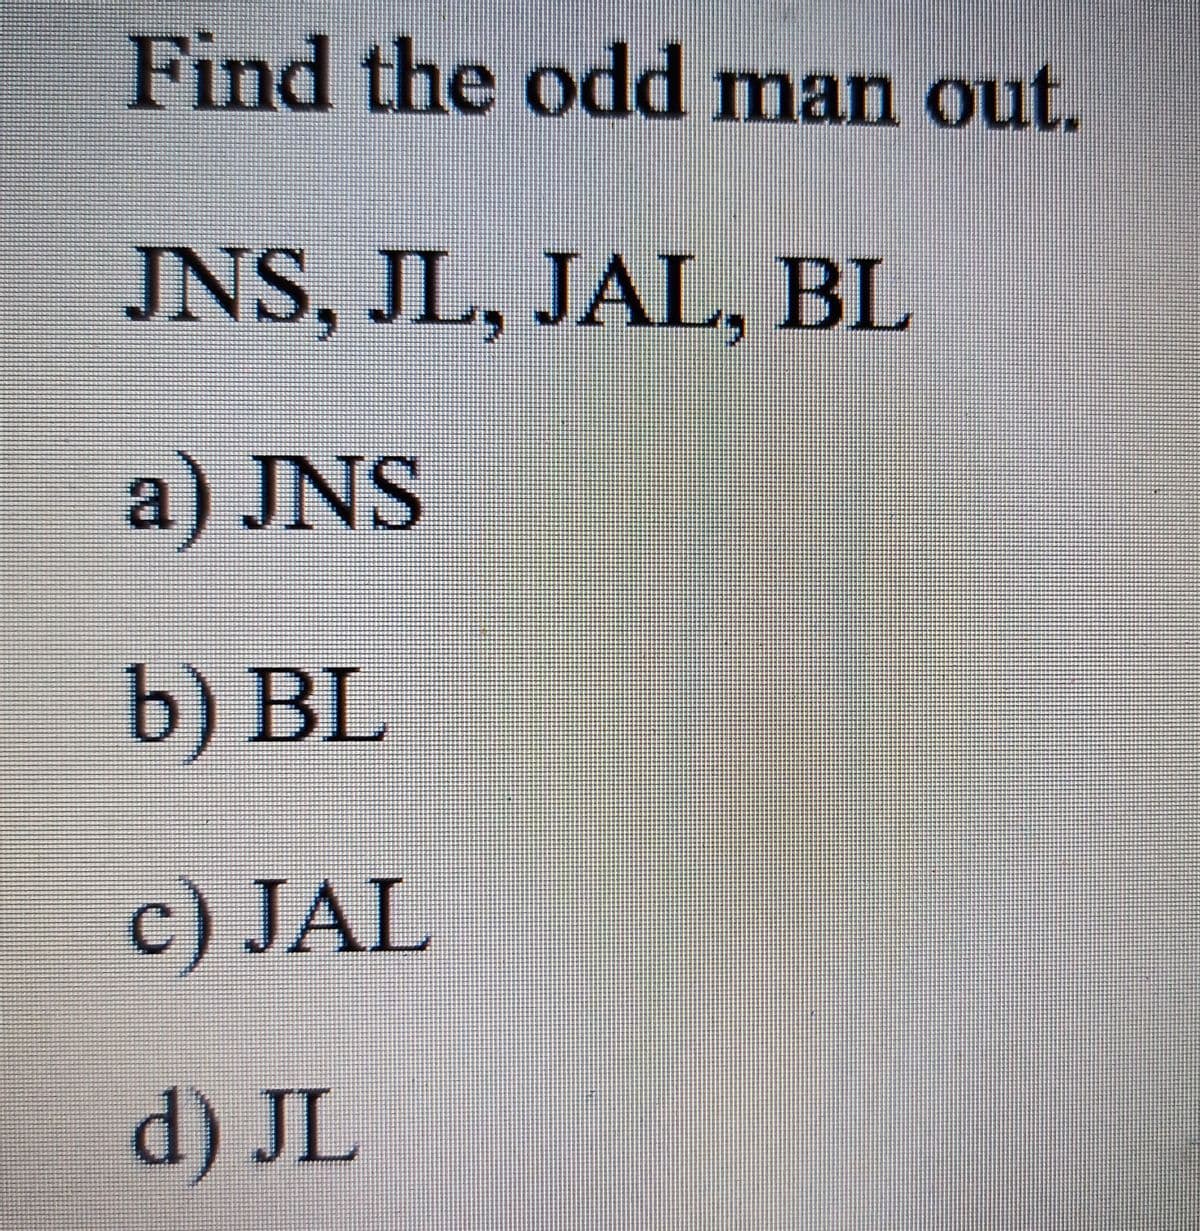 Find the odd man out.
JNS, JL, JAL, BL
a) JNS
b) BL
c) JAL
d) JL
